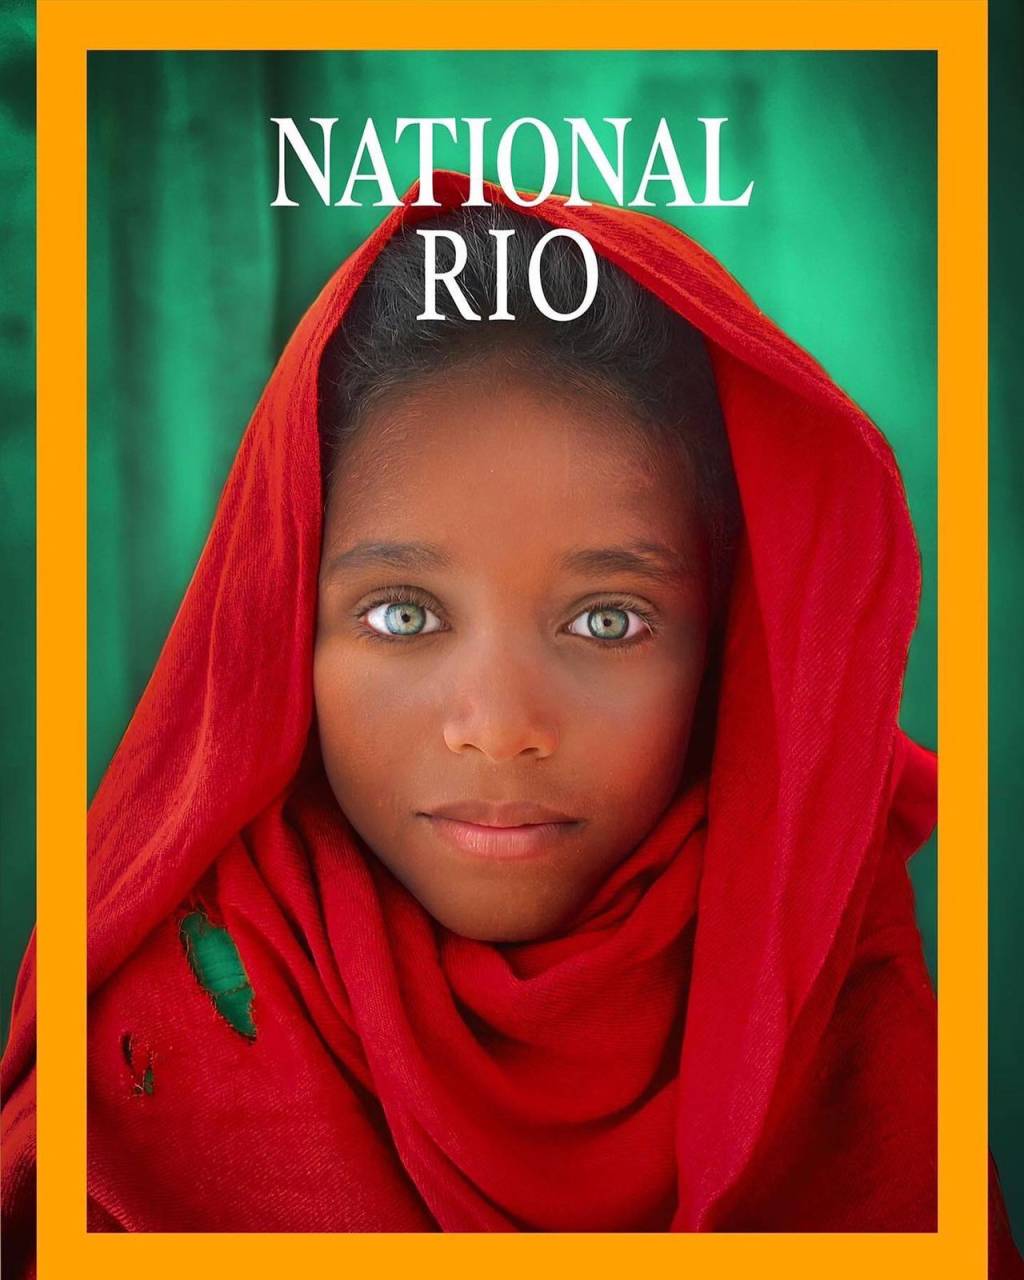 Foto mostra menino olhando para a câmera com olhos verdes, pele negra, usando um turbante vermelho. Acima está escrito "National Rio"